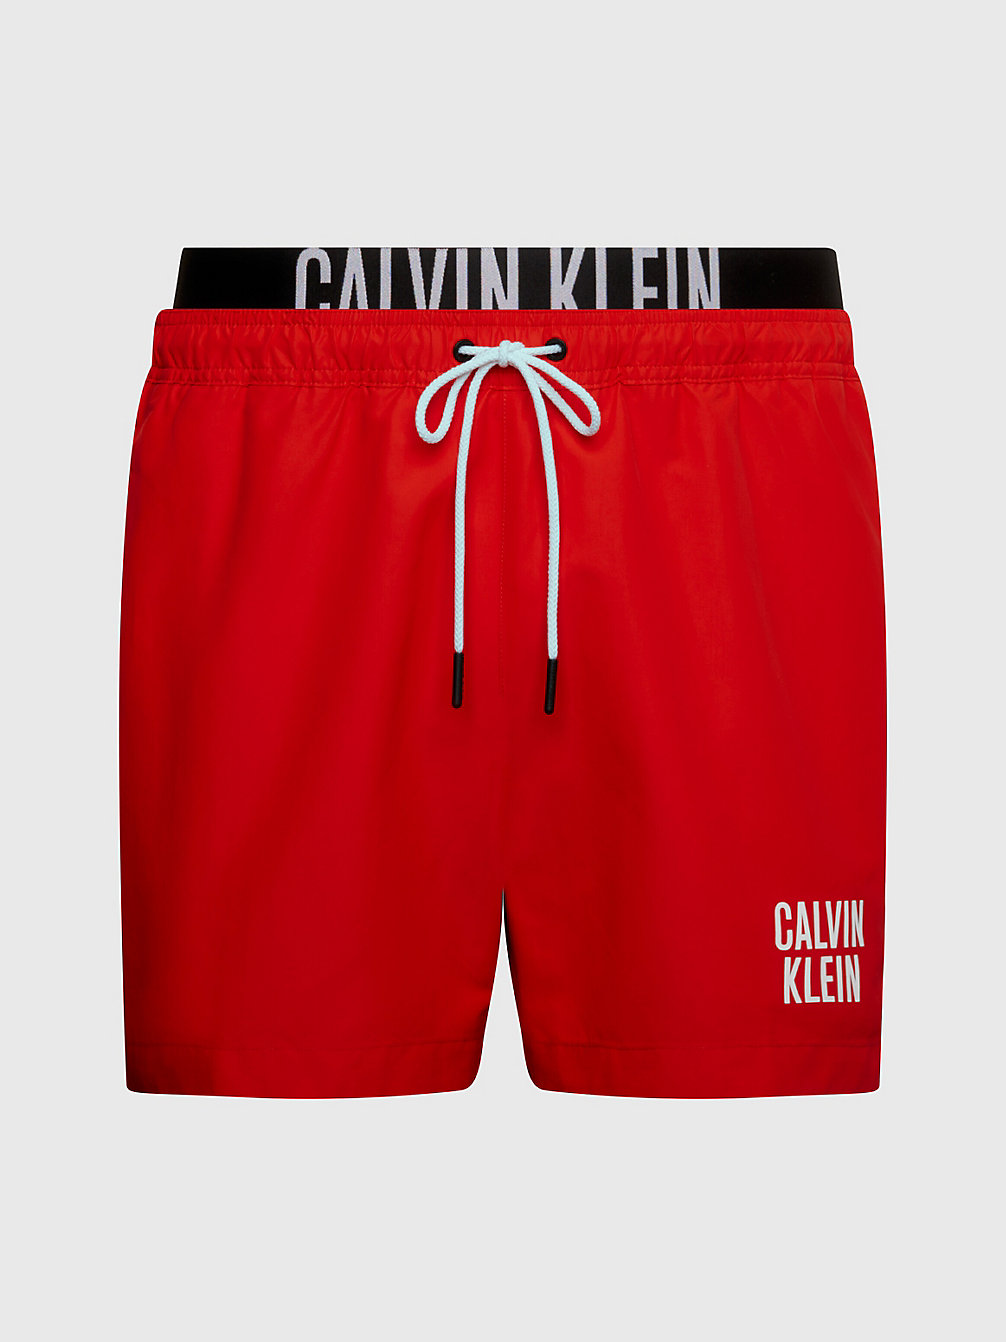 CAJUN RED > Badeshorts Mit Doppeltem Bund – Intense Power > undefined Herren - Calvin Klein